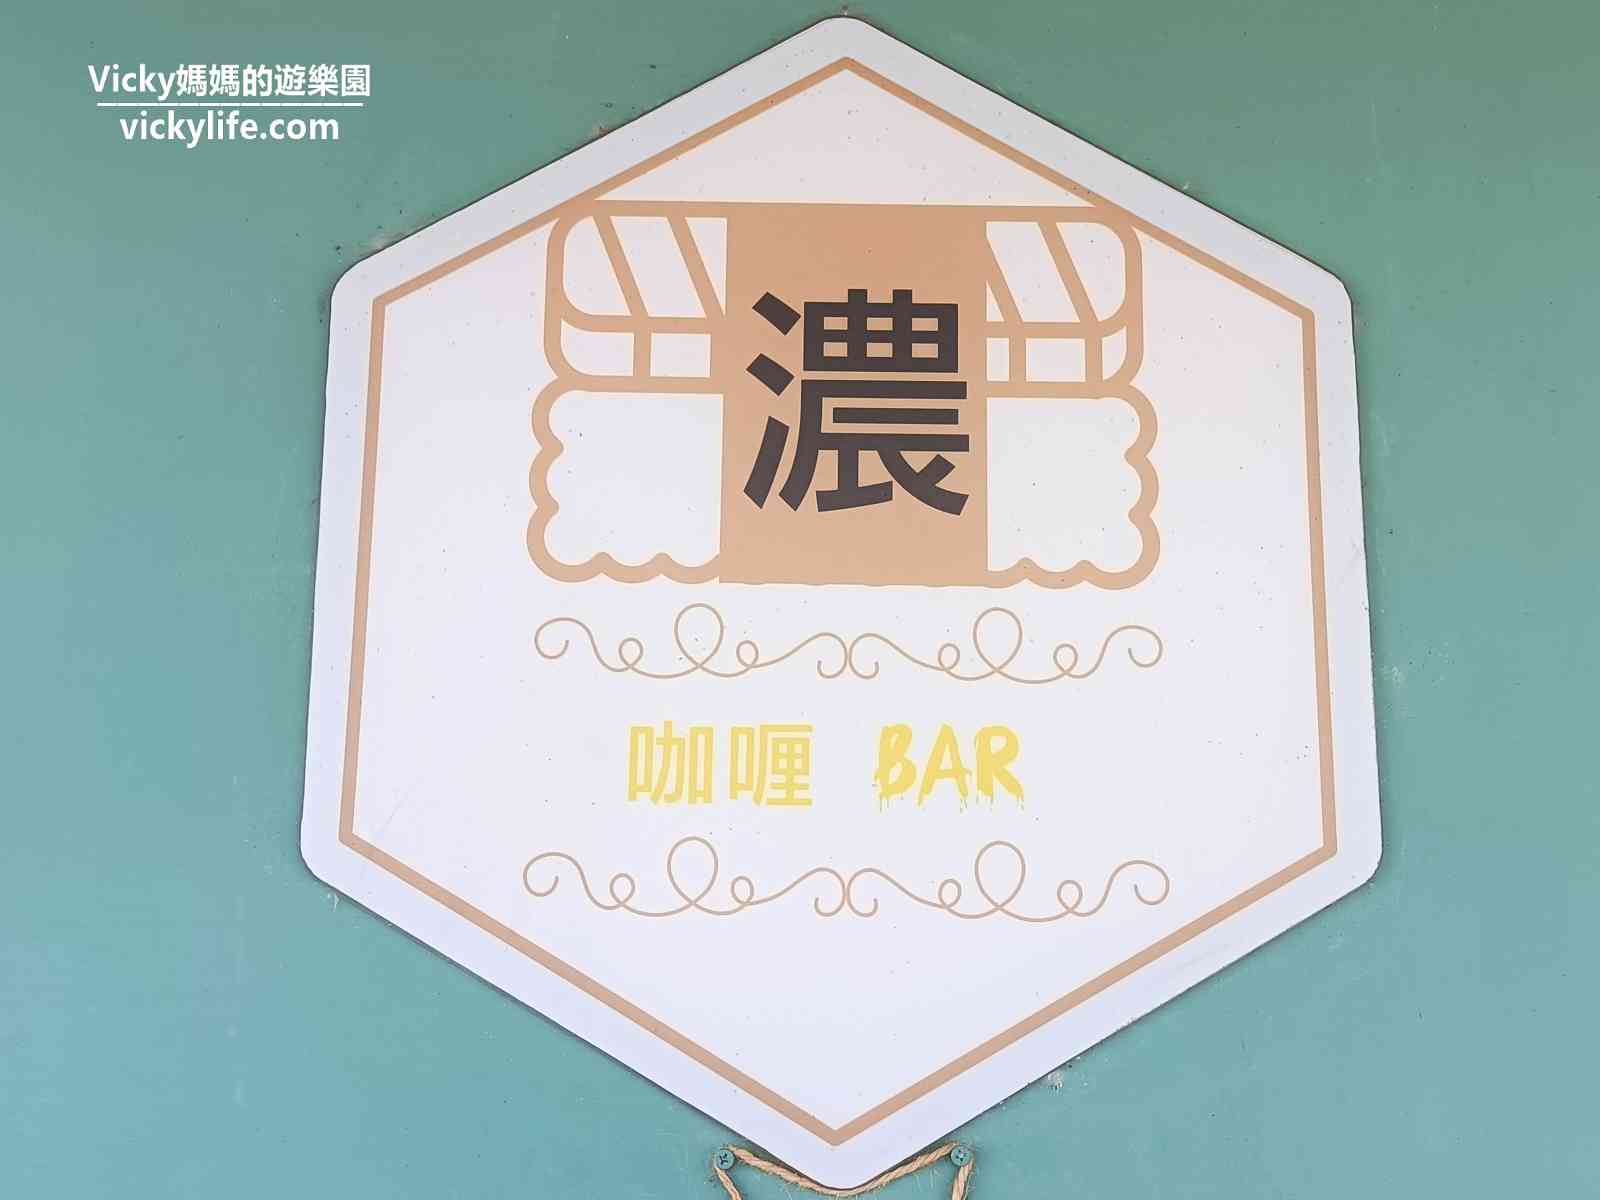 台南隆田火車站美食︱濃咖哩Bar：料多味美好實在，離車站和Cha Cha文化資產教育園區超近，步行1分鐘即抵達